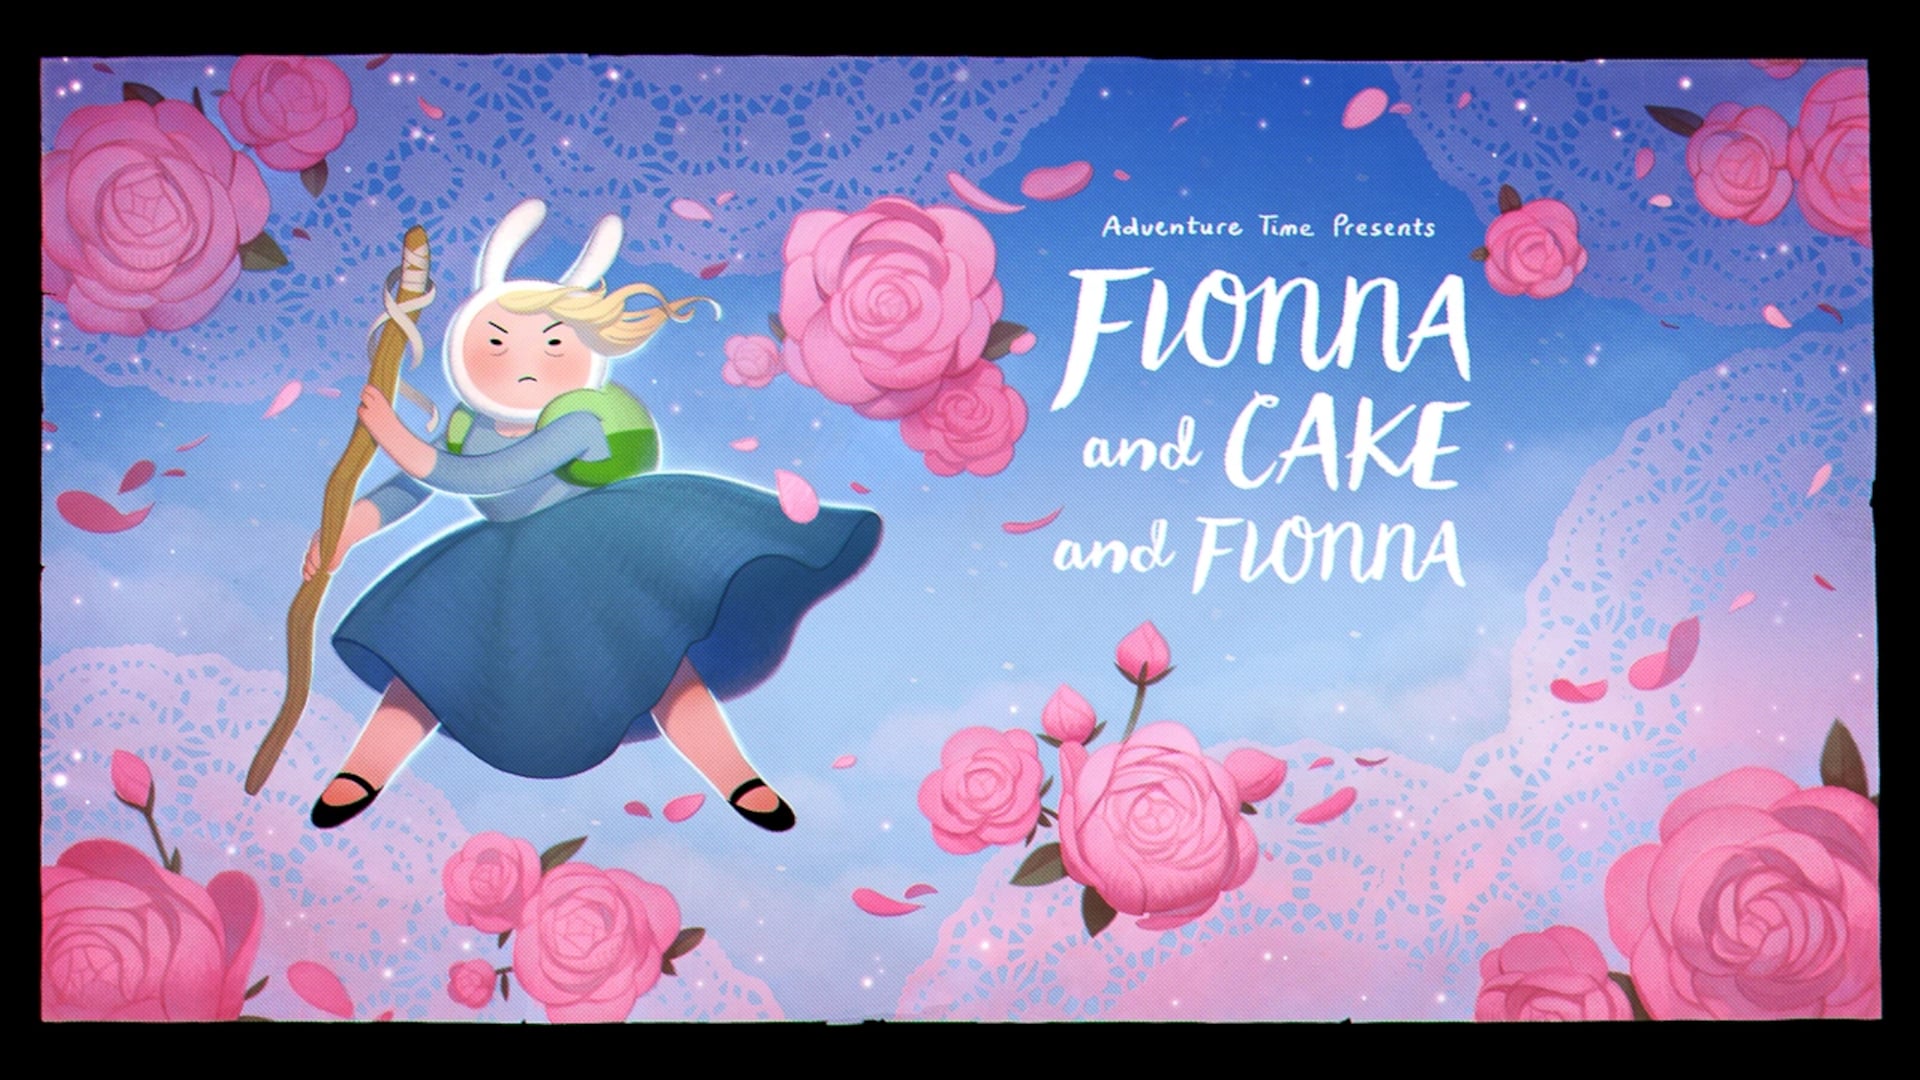 Assistir Hora de Aventura com Fionna e Cake Online Grátis